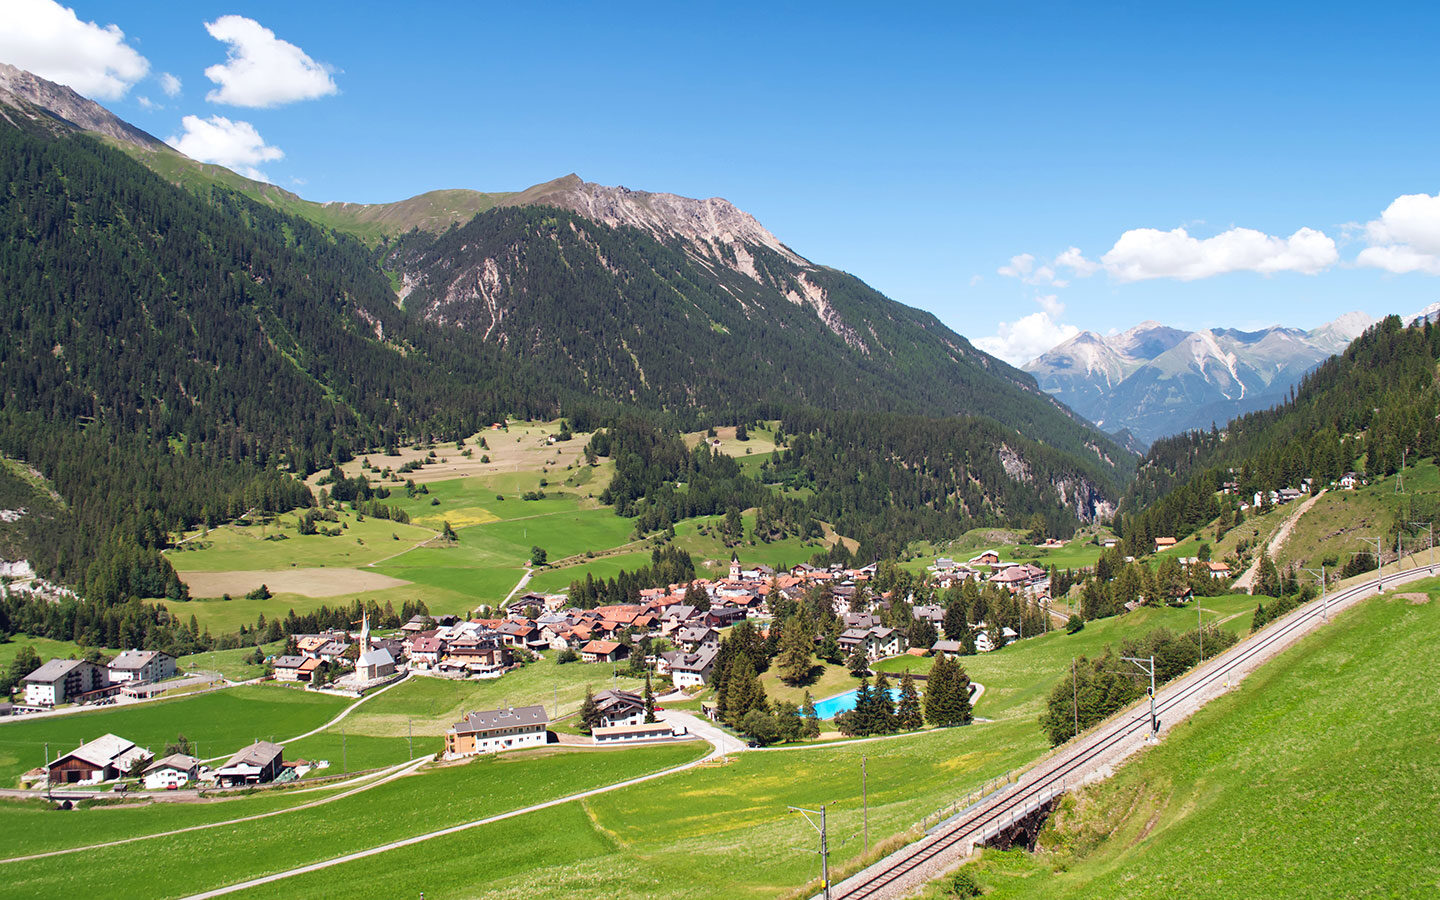 Scenic train line through the Alps